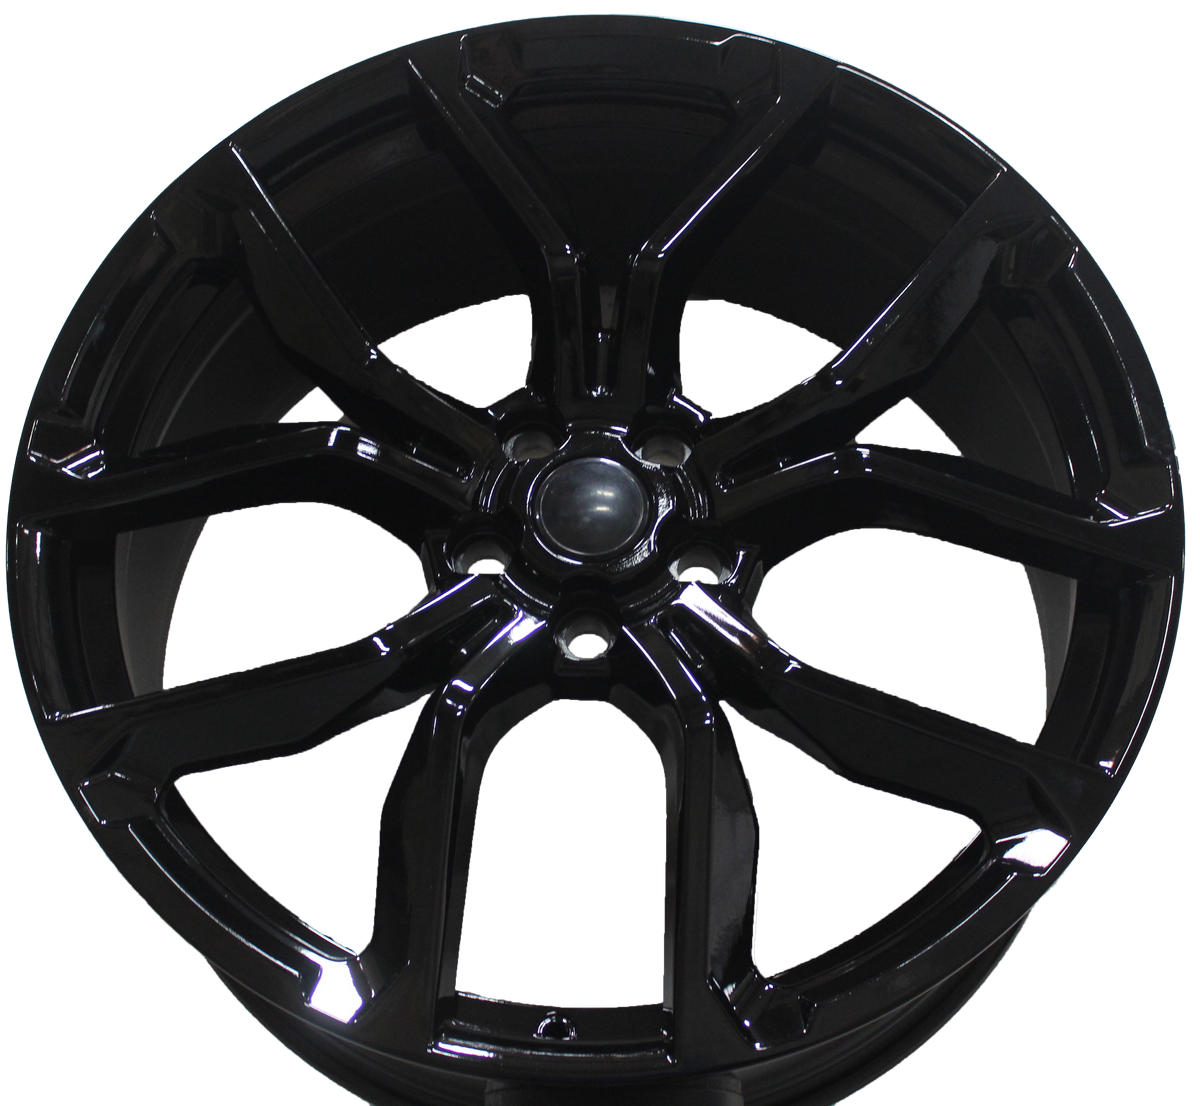 22 Inch Rims Range Rover Sport SVR Style Gloss Black Wheels